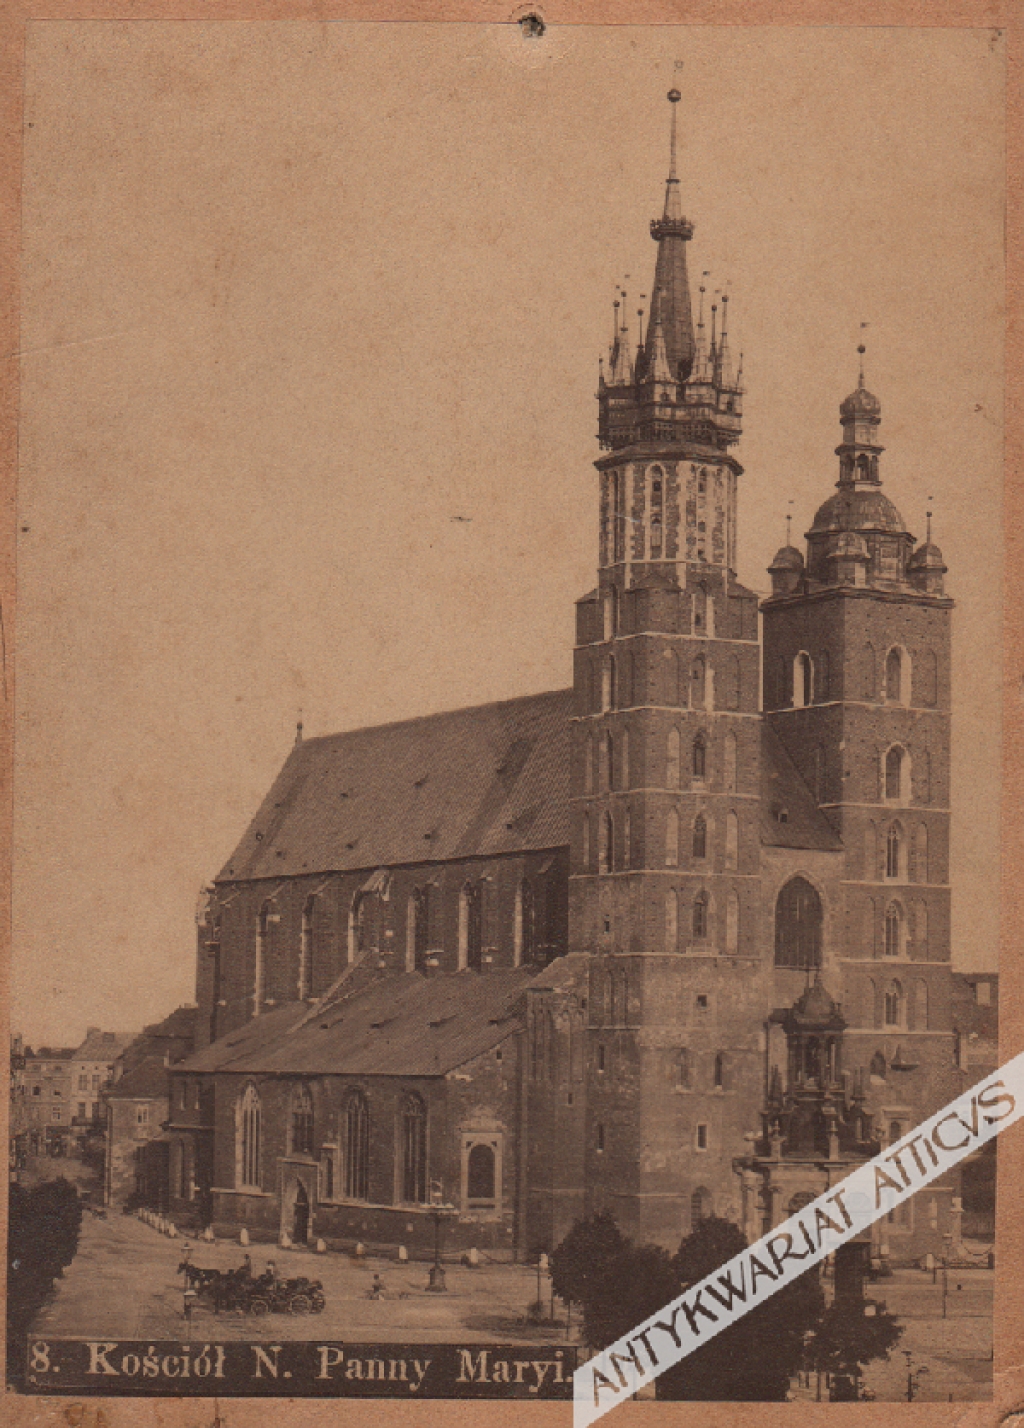 [fotografia, ok. 1890] Kraków. Kościół N. Panny Maryi [Wniebowzięcia Najświętszej Maryi Panny]